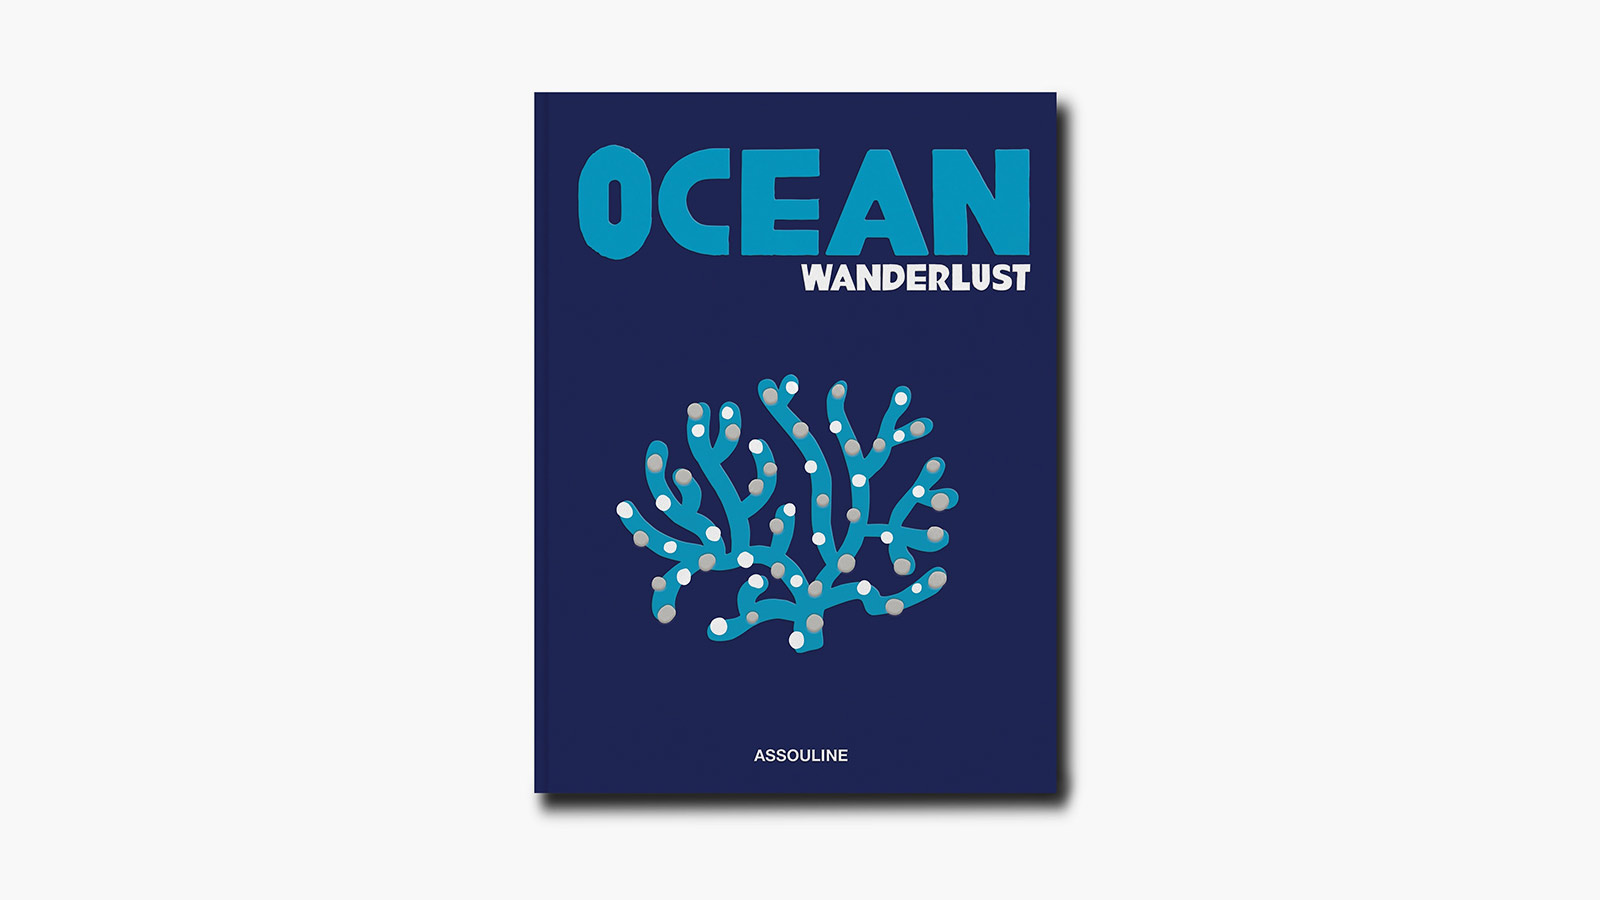 Ocean Wanderlust by Kevin Koenig